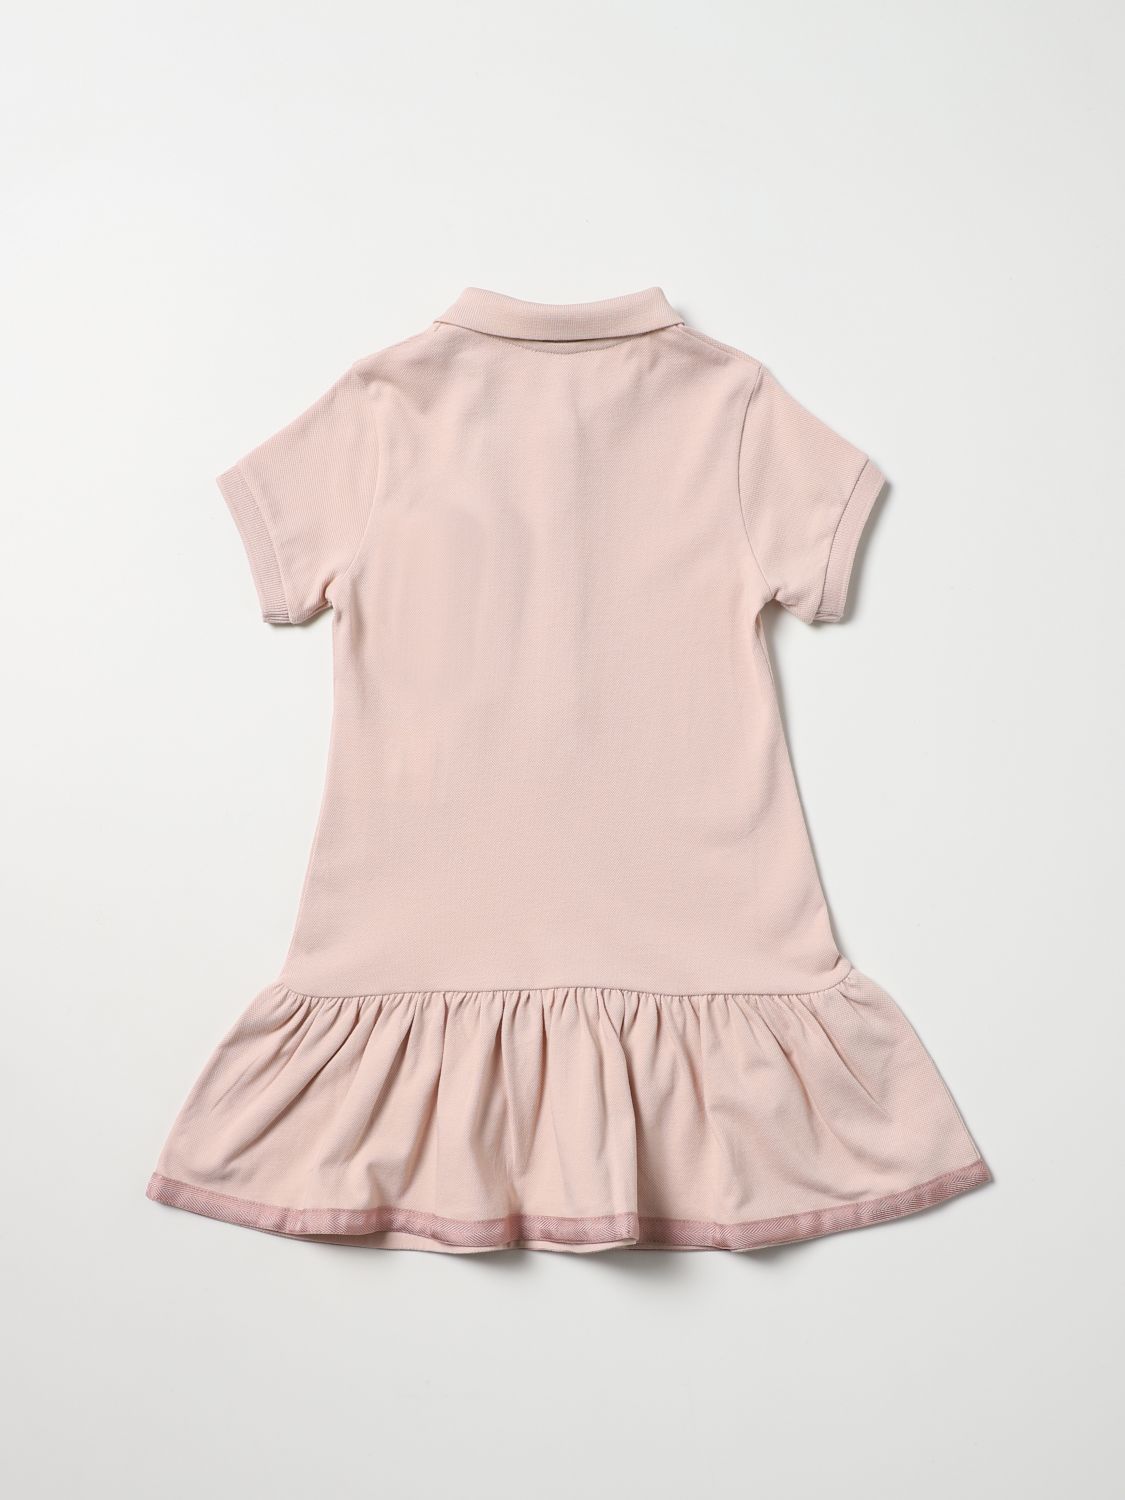 Kleid Moncler: Moncler Mädchen Kleid pink 2